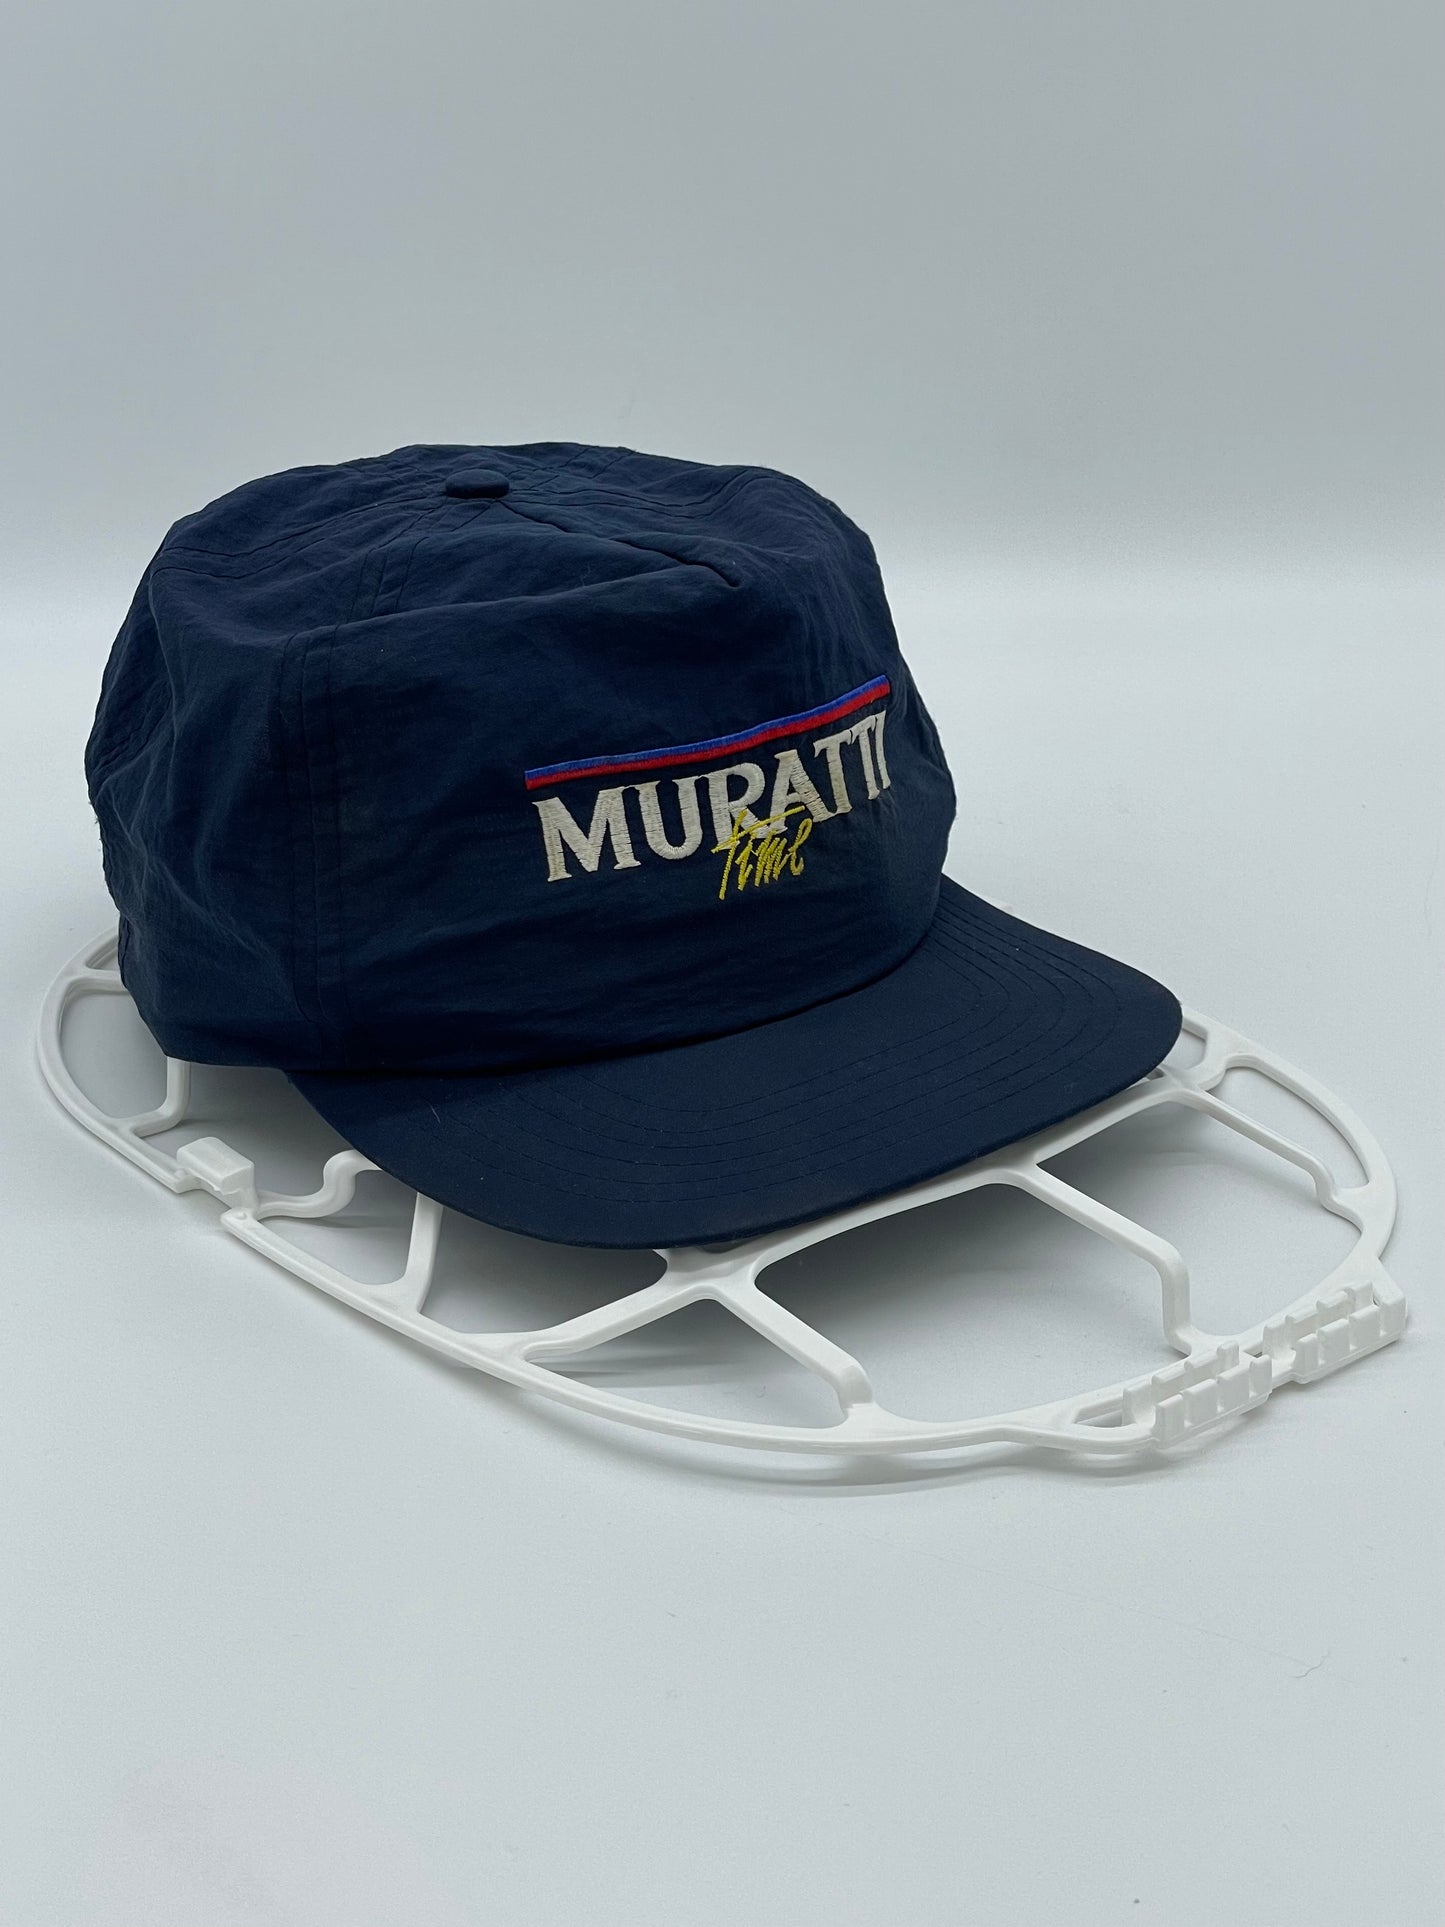 Baseball Cup Muratti Time 1990s